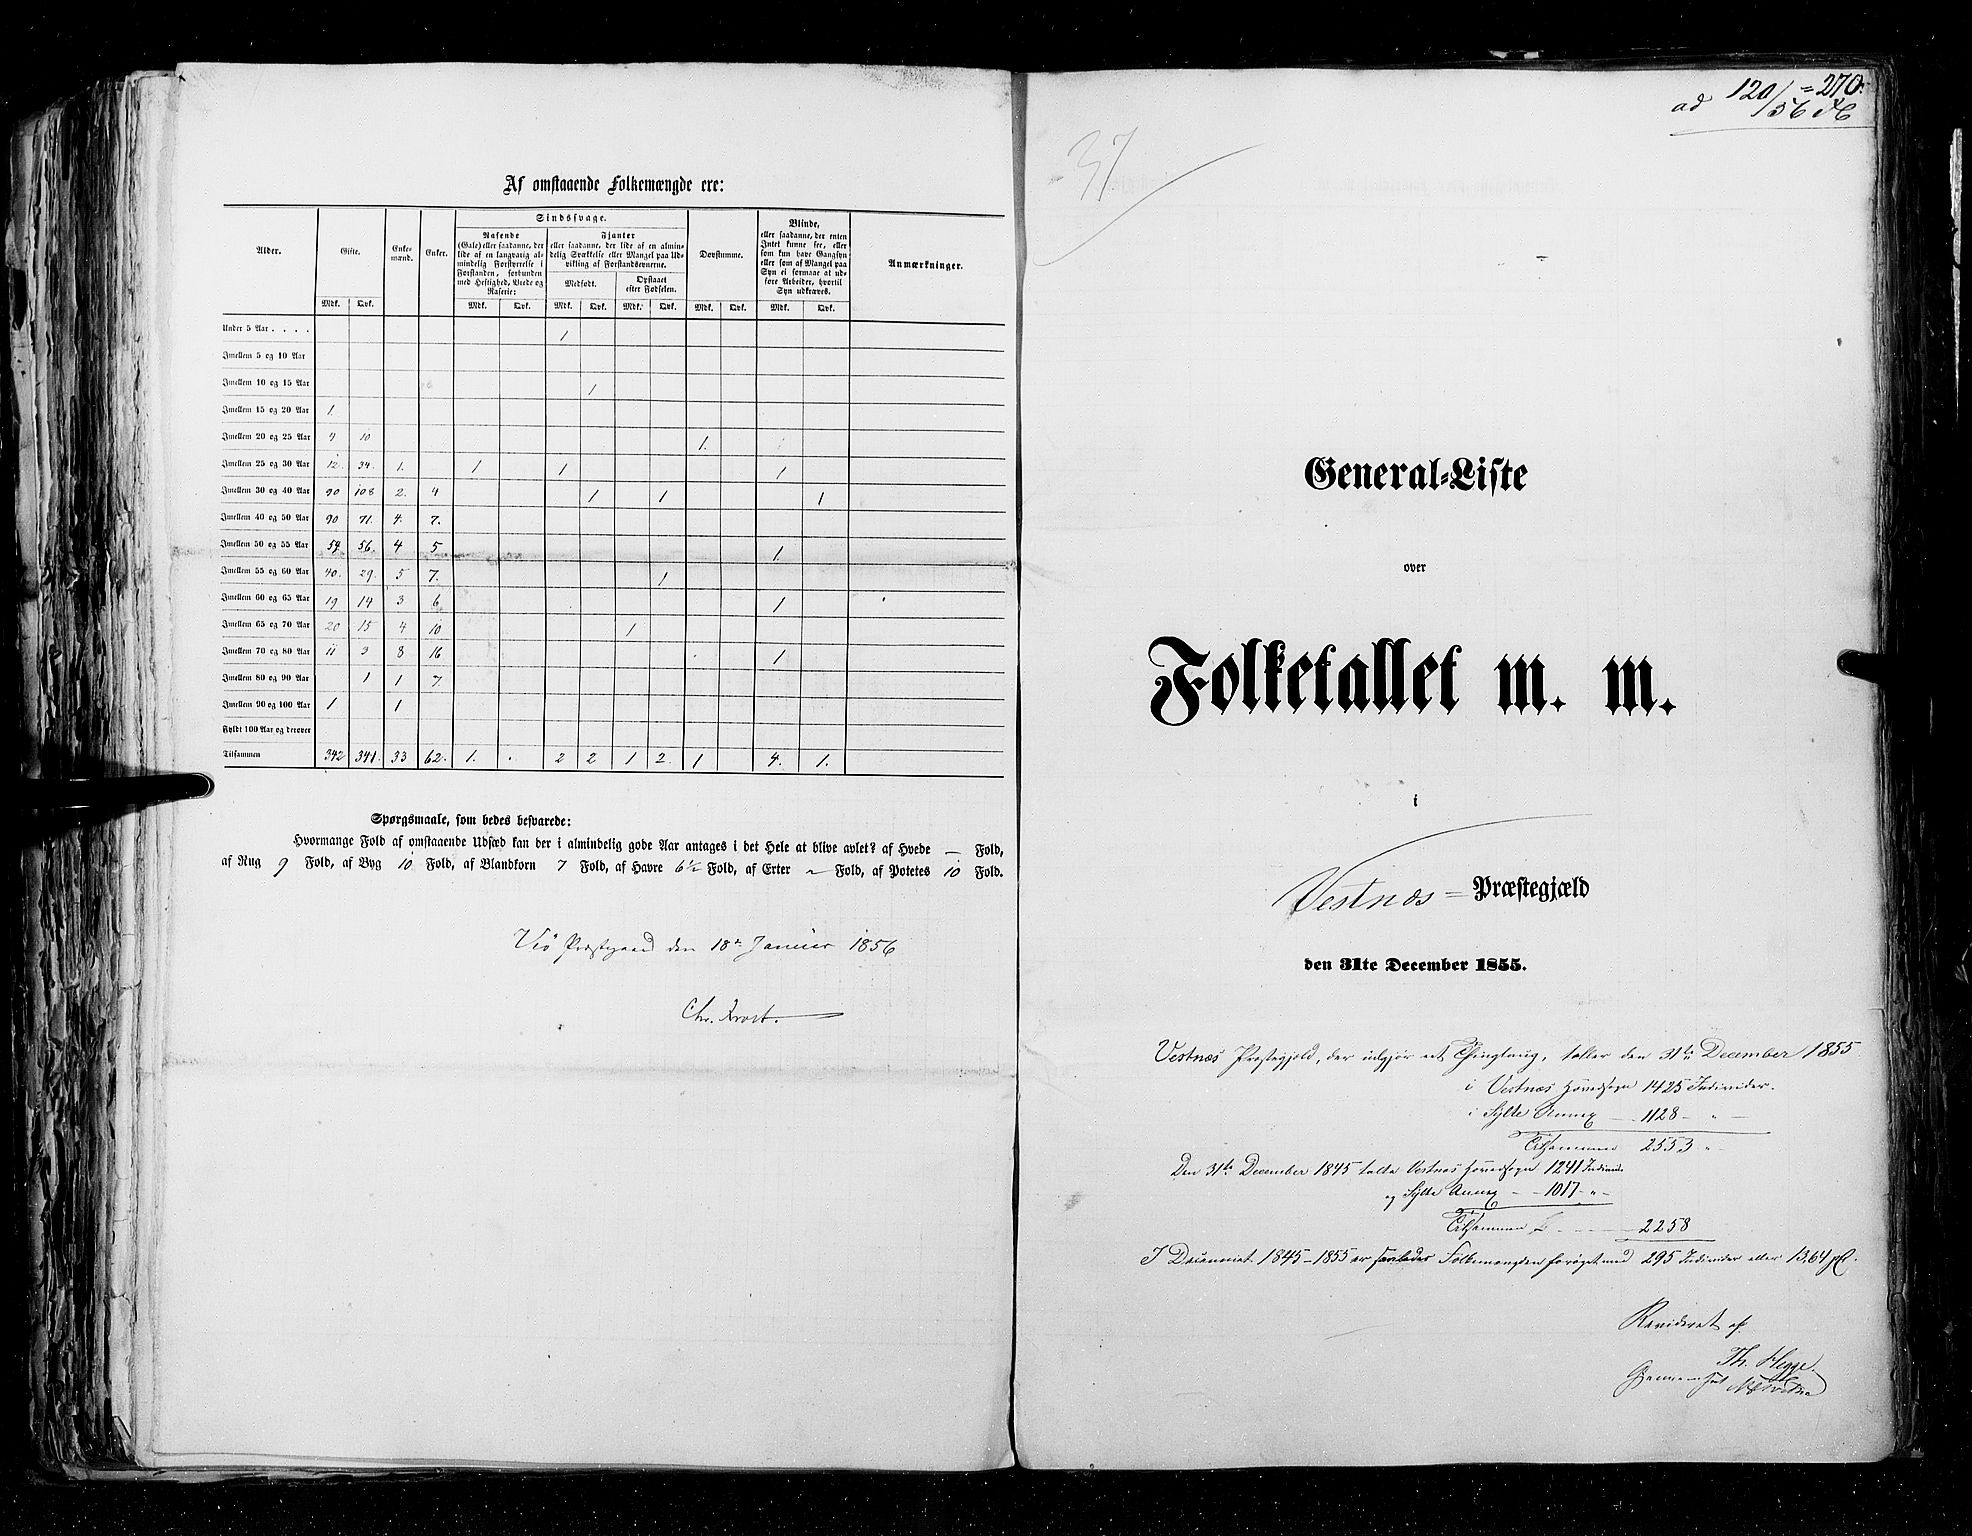 RA, Folketellingen 1855, bind 5: Nordre Bergenhus amt, Romsdal amt og Søndre Trondhjem amt, 1855, s. 270